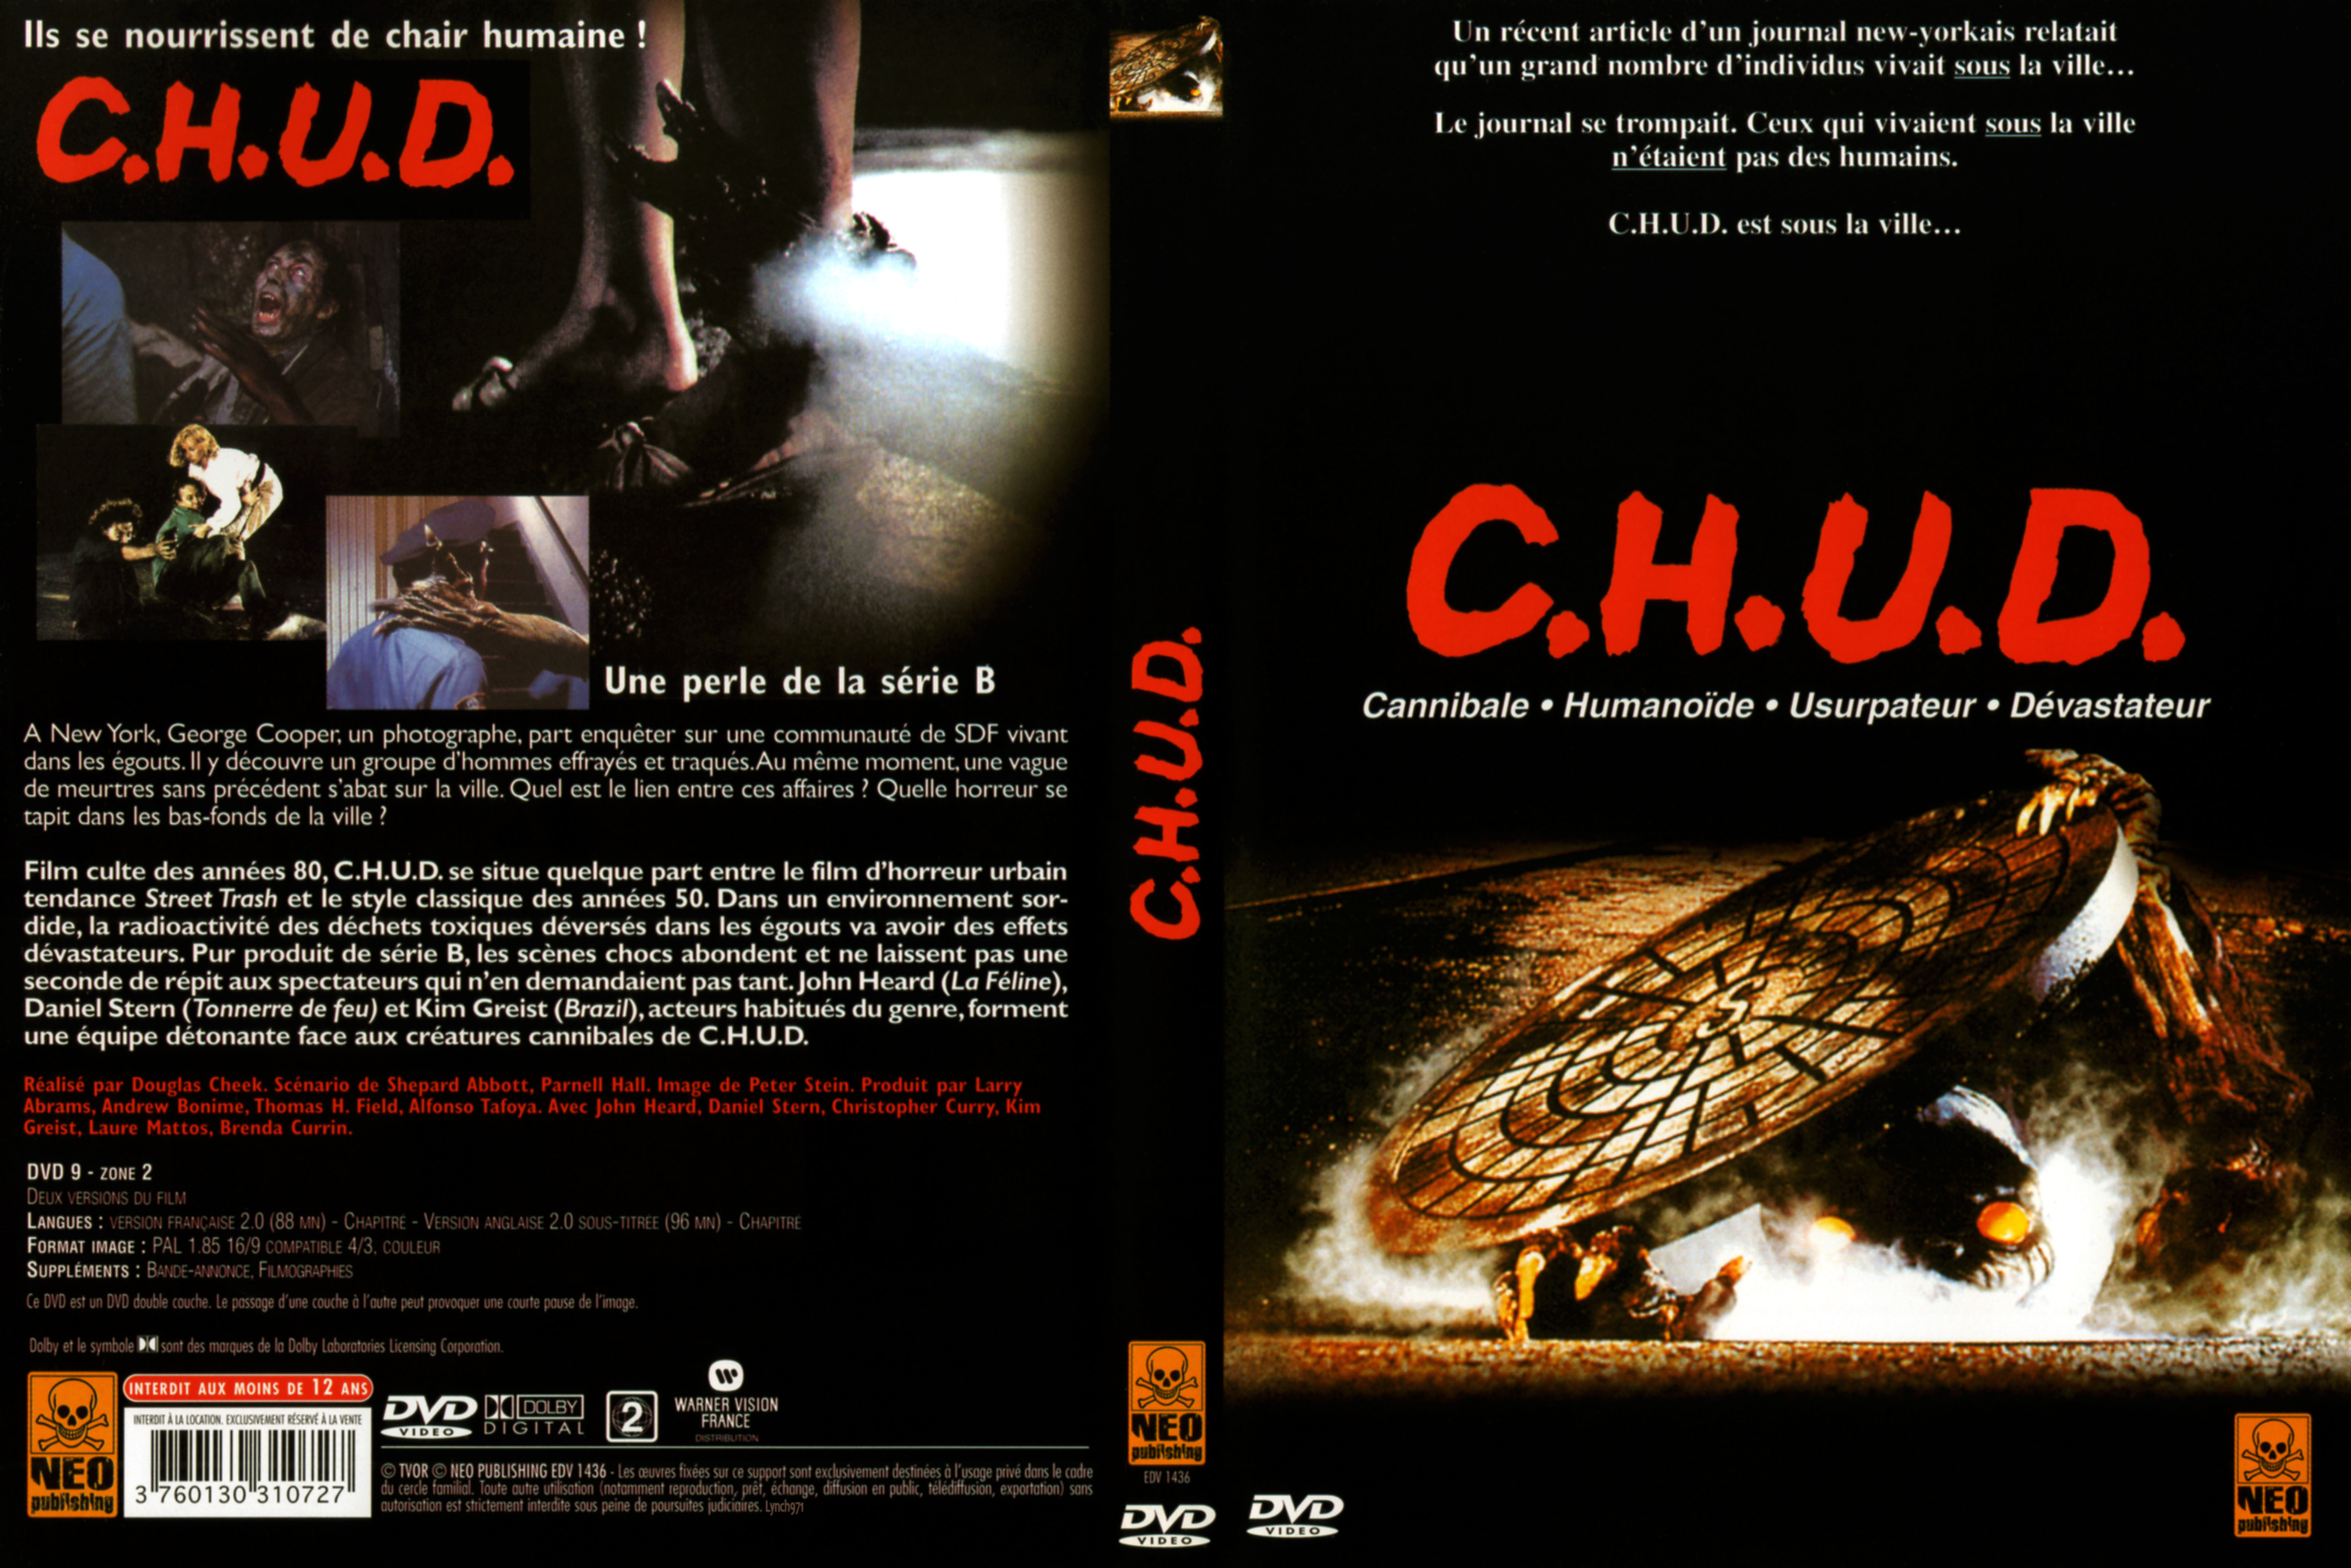 Jaquette DVD C.H.U.D v2